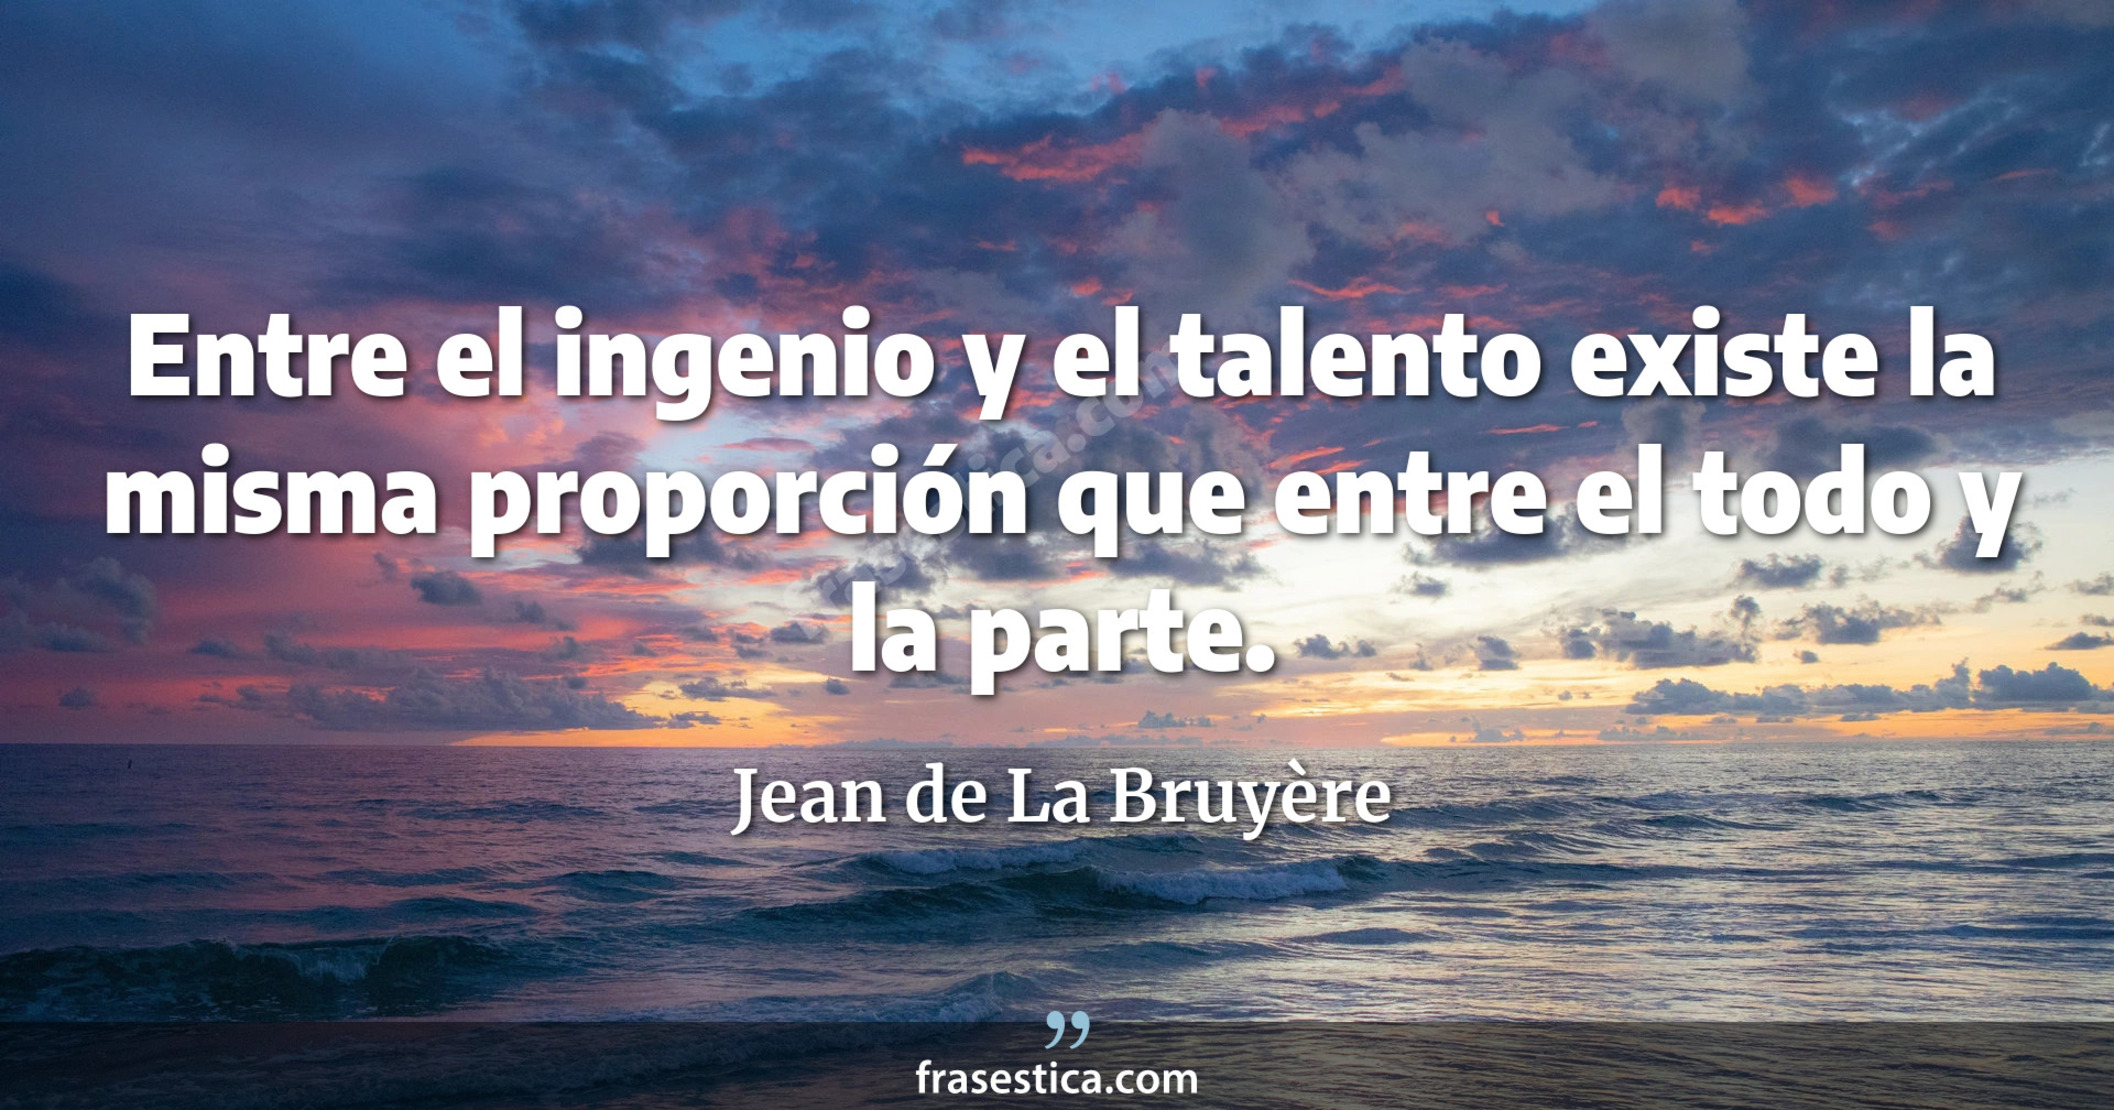 Entre el ingenio y el talento existe la misma proporción que entre el todo y la parte. - Jean de La Bruyère